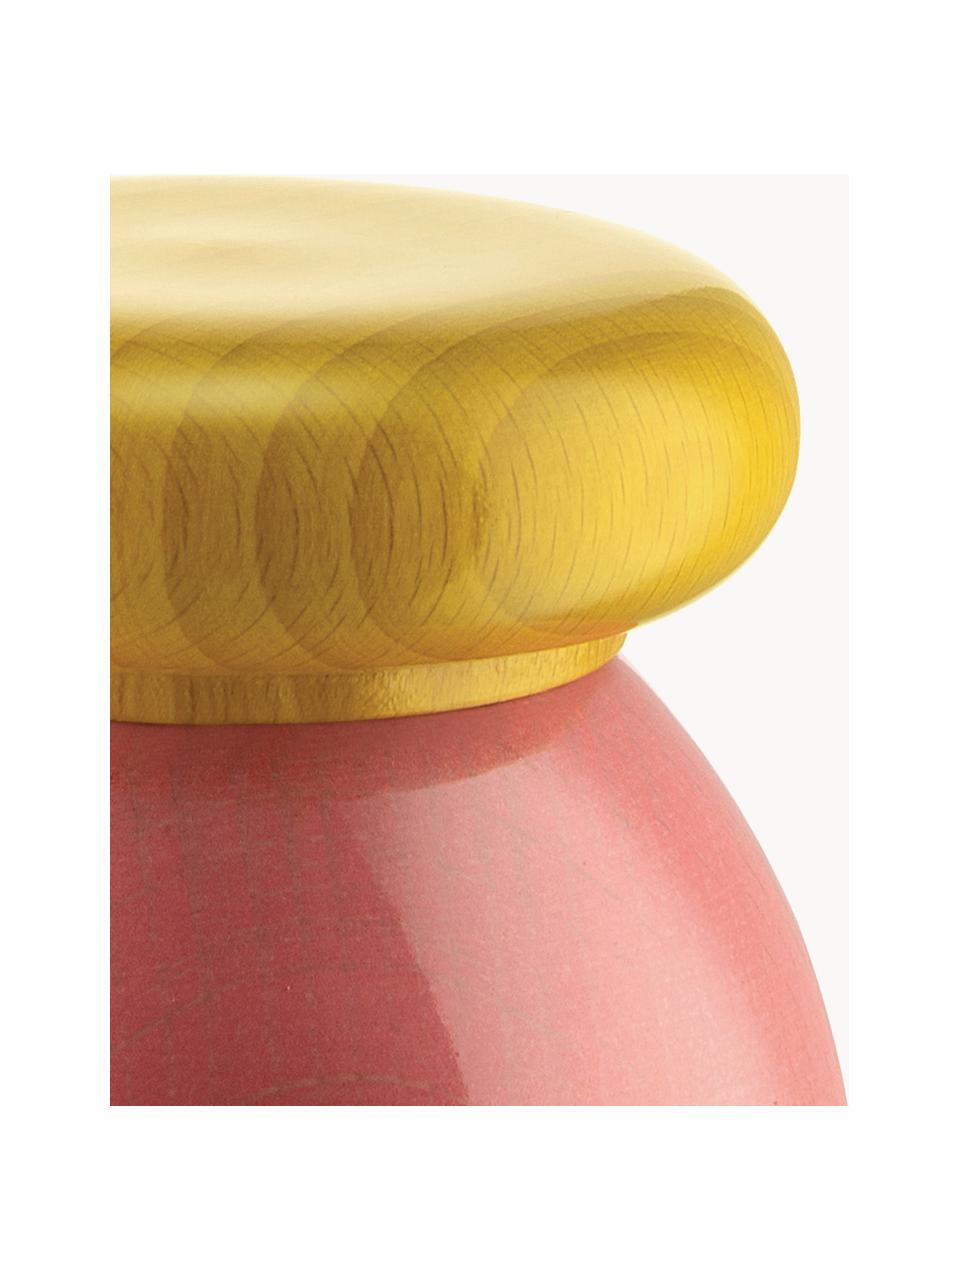 Macinaspezie Twergi, Legno di faggio, macinino in ceramica, Rosa, rosso, giallo acceso, Ø 7 x Alt. 11 cm